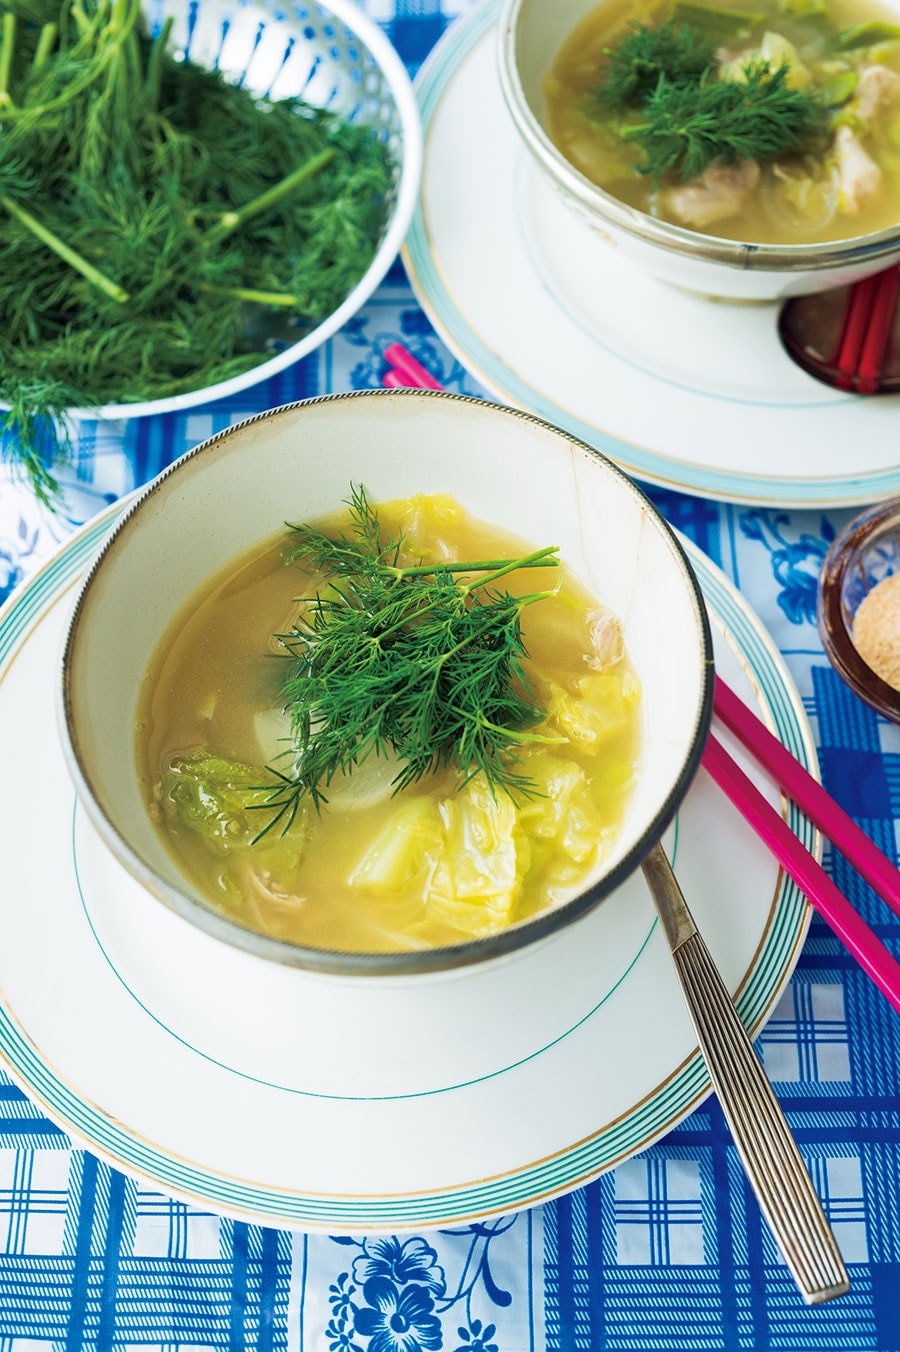 ディルの香りが効いた 心身をいたわる癒やしのスープ 「イサーンスタイル チキンのハーブスープ」のレシピ。